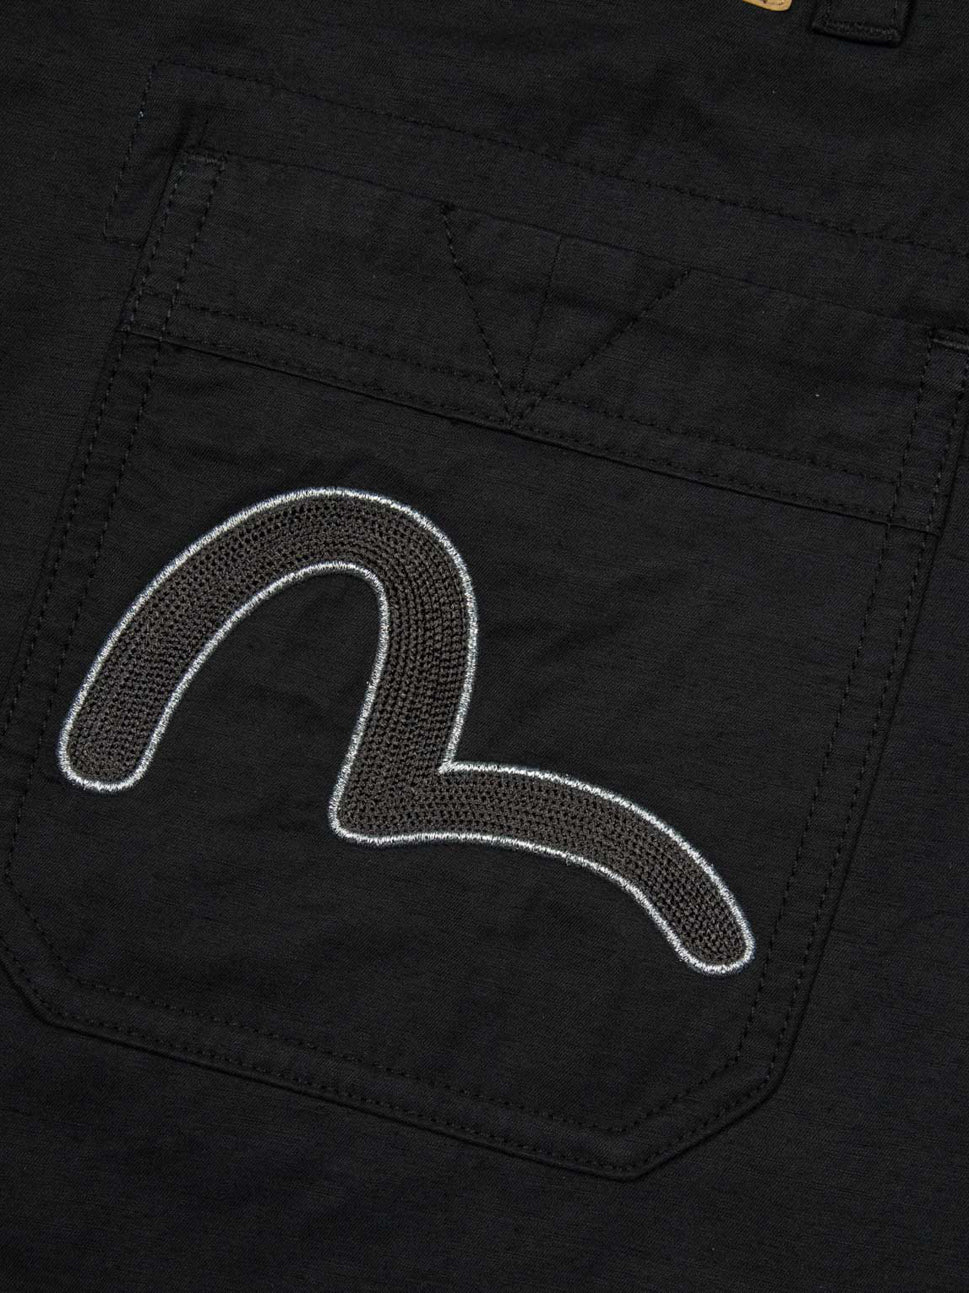 Evisu Seagull Embroidery And Kamon PrintÂ Pants